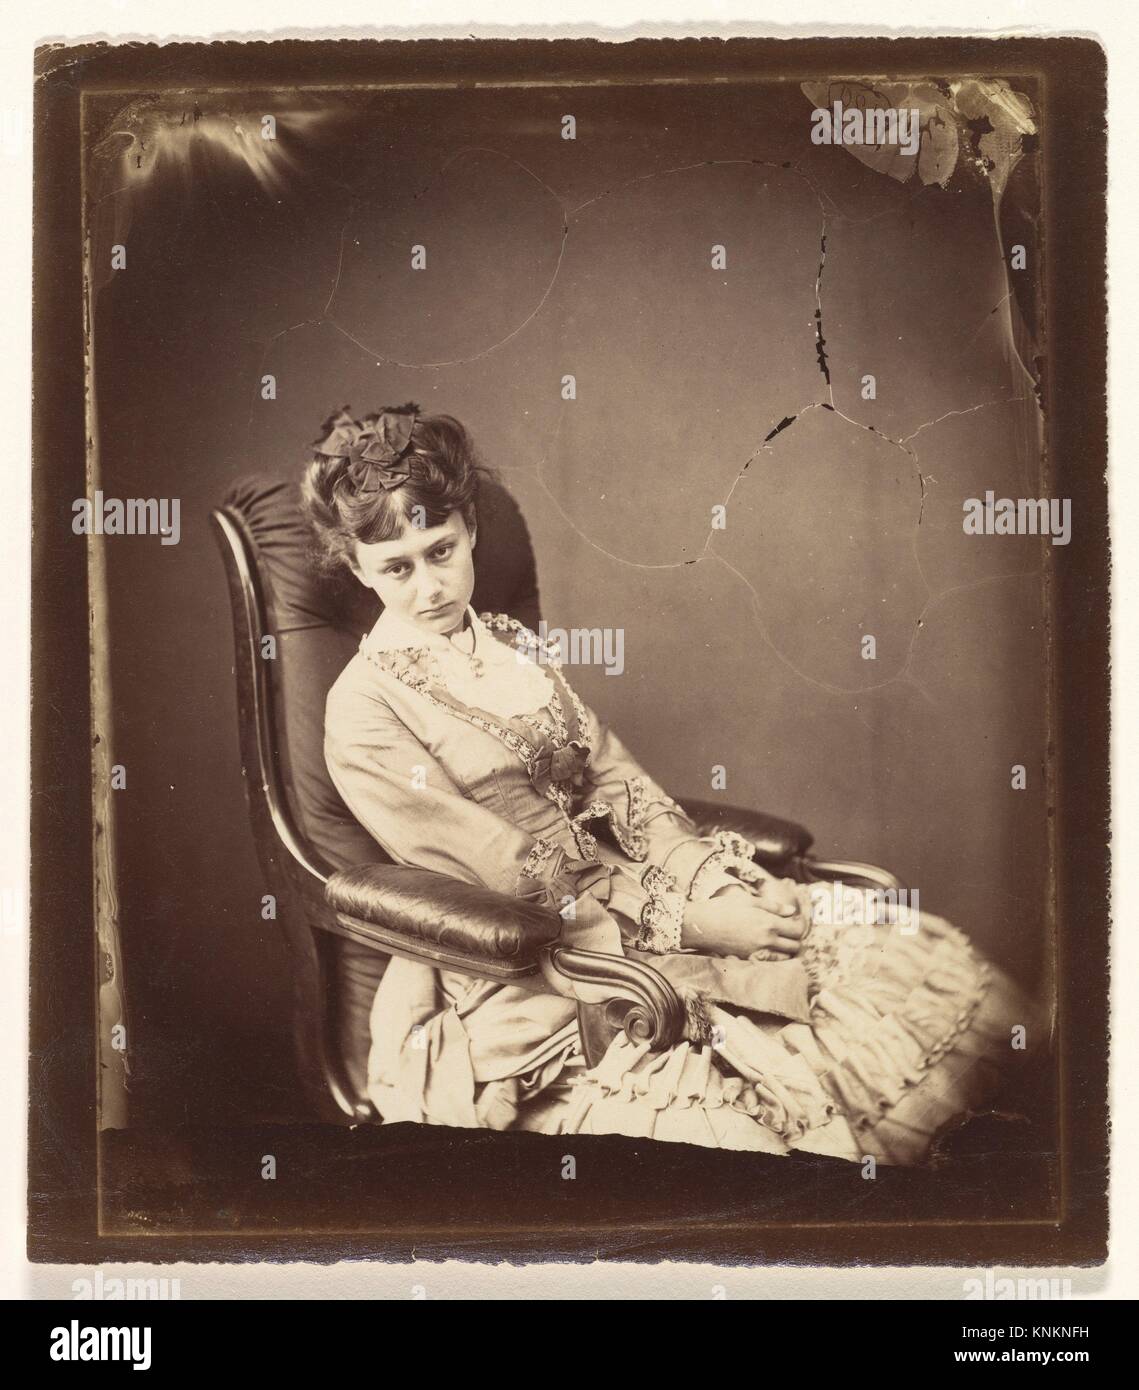 La última sesión. Artista: Lewis Carroll (British, Daresbury, Cheshire Guildford 1832-1898); Persona en Fotografía: Persona en fotografía Alice Foto de stock